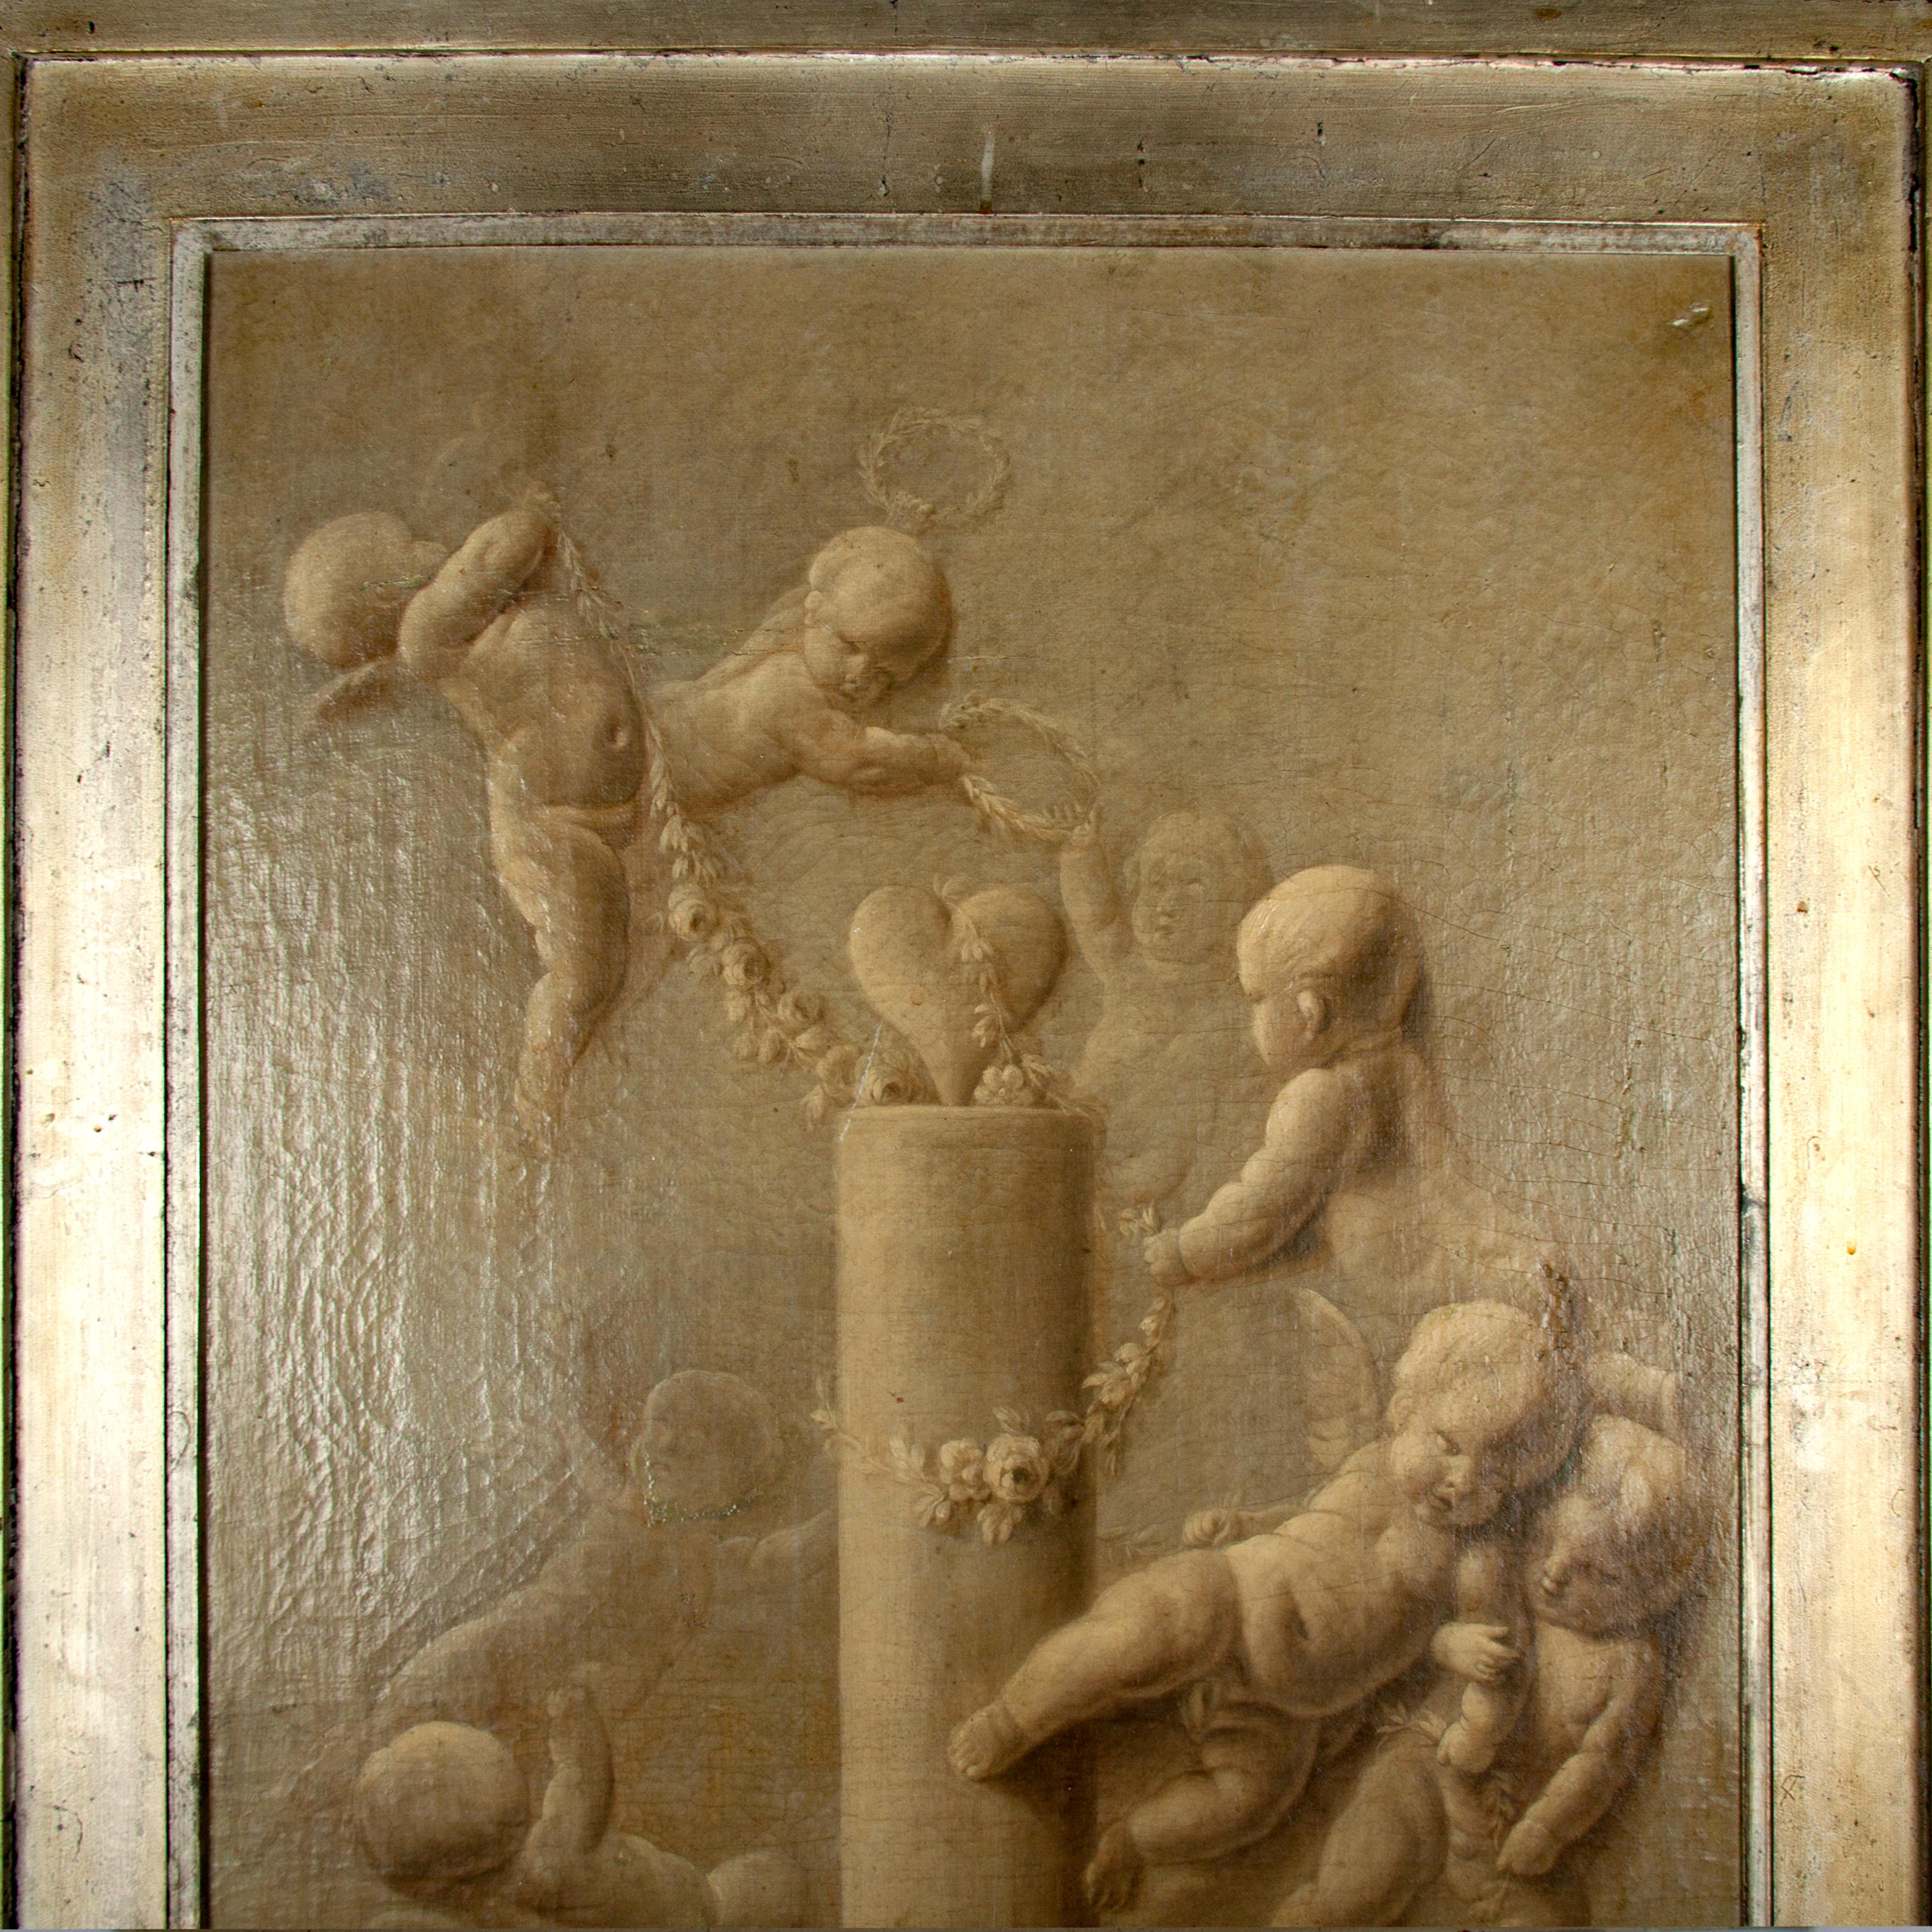 Darstellung von spielenden Putten
Südliche Niederlande
18. Jahrhundert
Öl auf Leinwand.